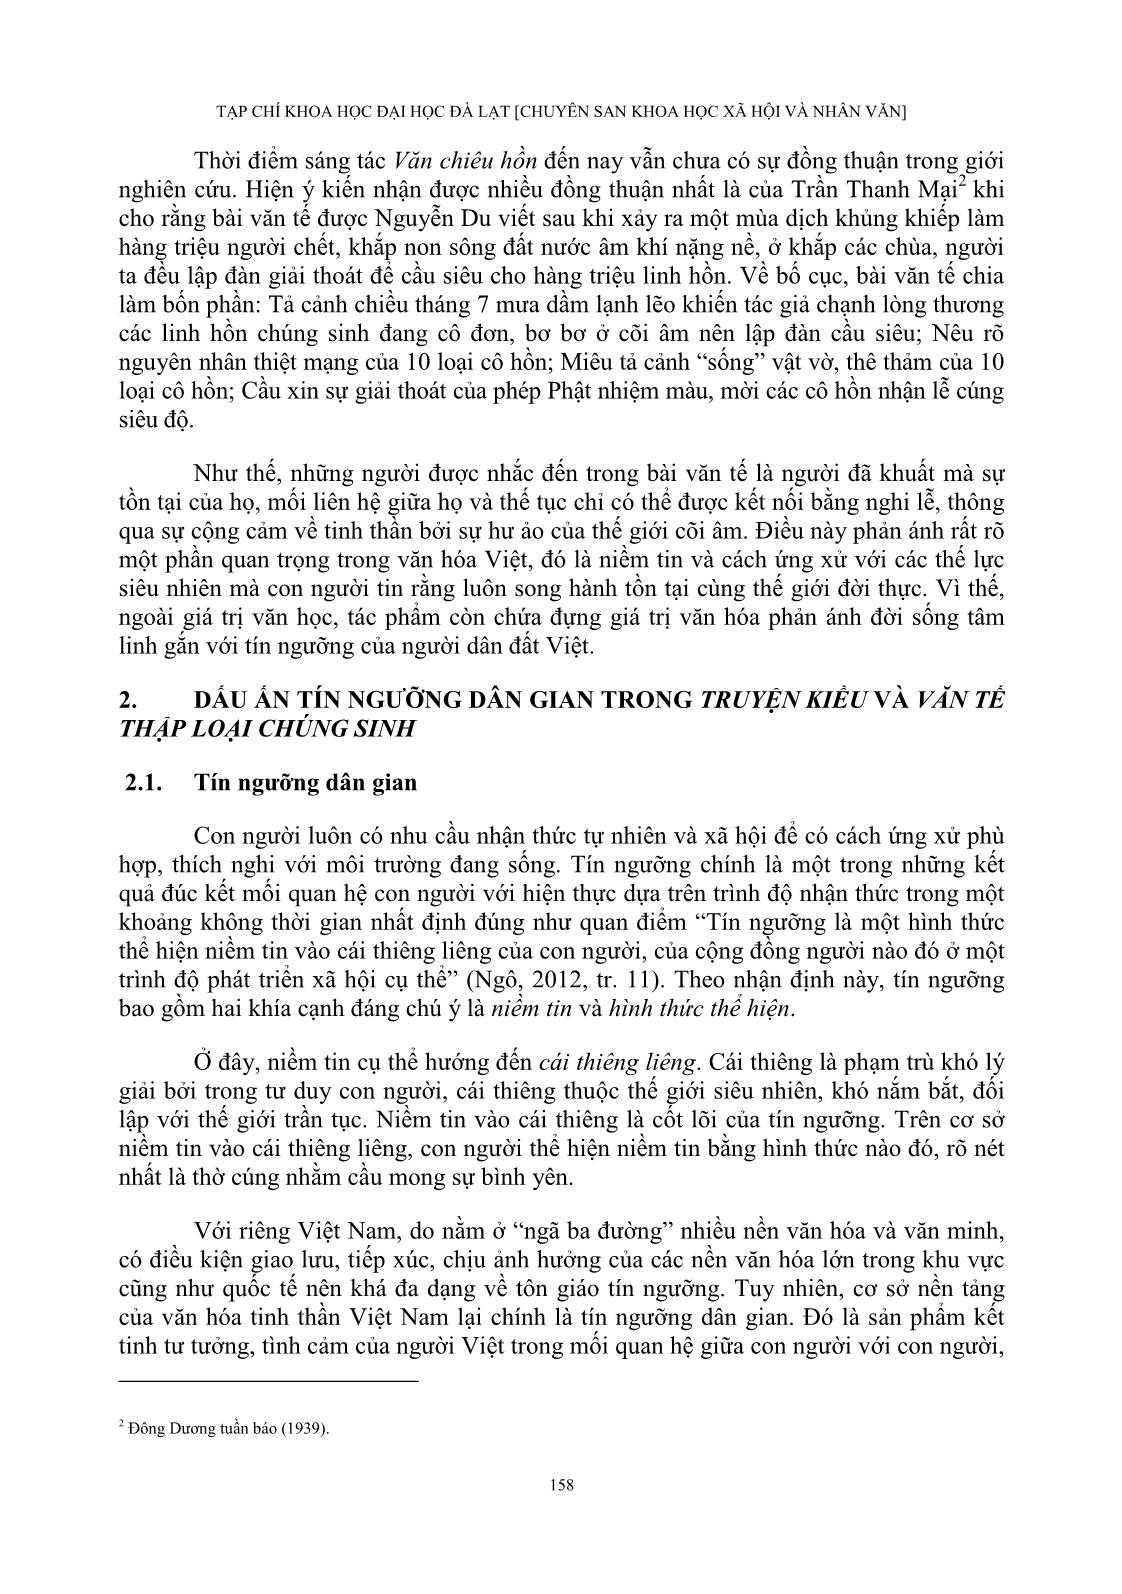 Tín ngưỡng dân gian trong truyện kiều và văn tế thập loại chúng sinh (văn chiêu hồn) của Nguyễn Du trang 4